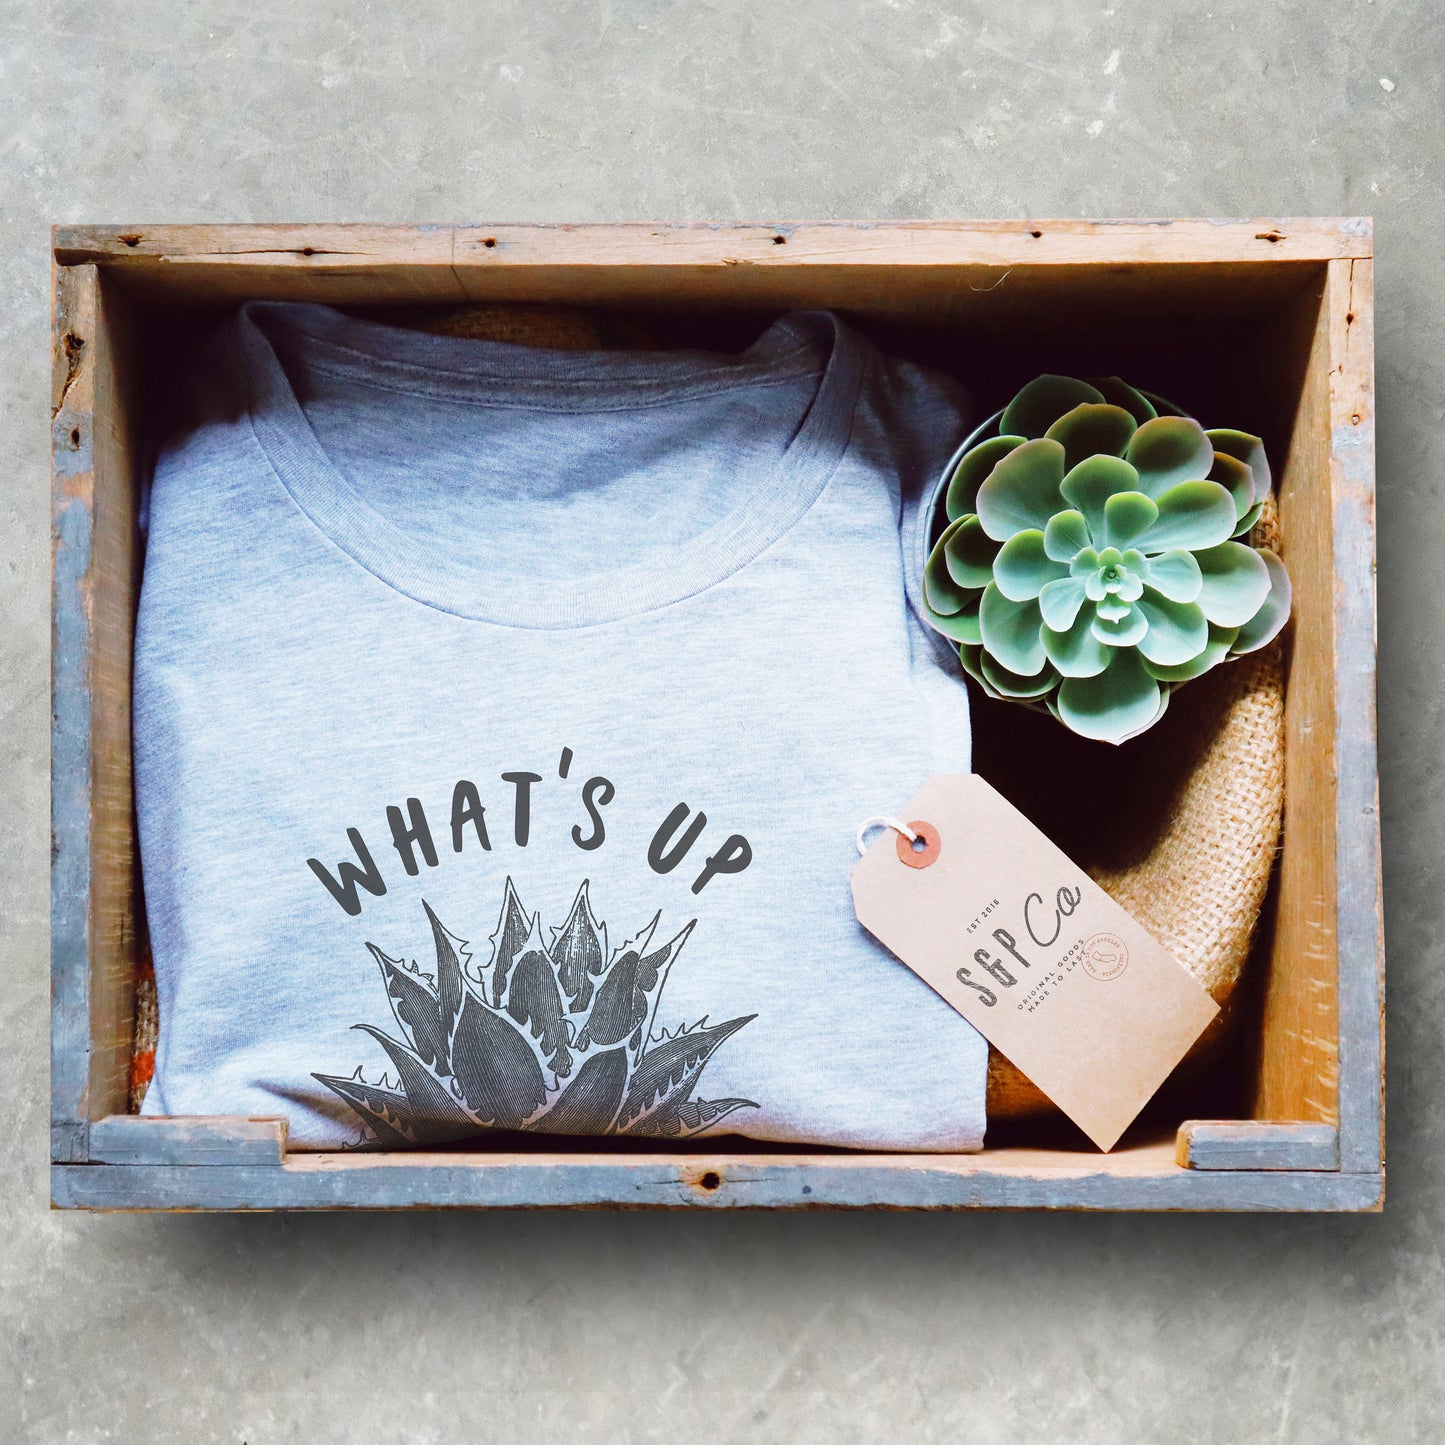 What's Up Succa? Unisex Shirt - Cactus Shirt, Cactus Gift, Succulent Shirt, Succulent Gift, Gardening Shirt, Gardening Gift